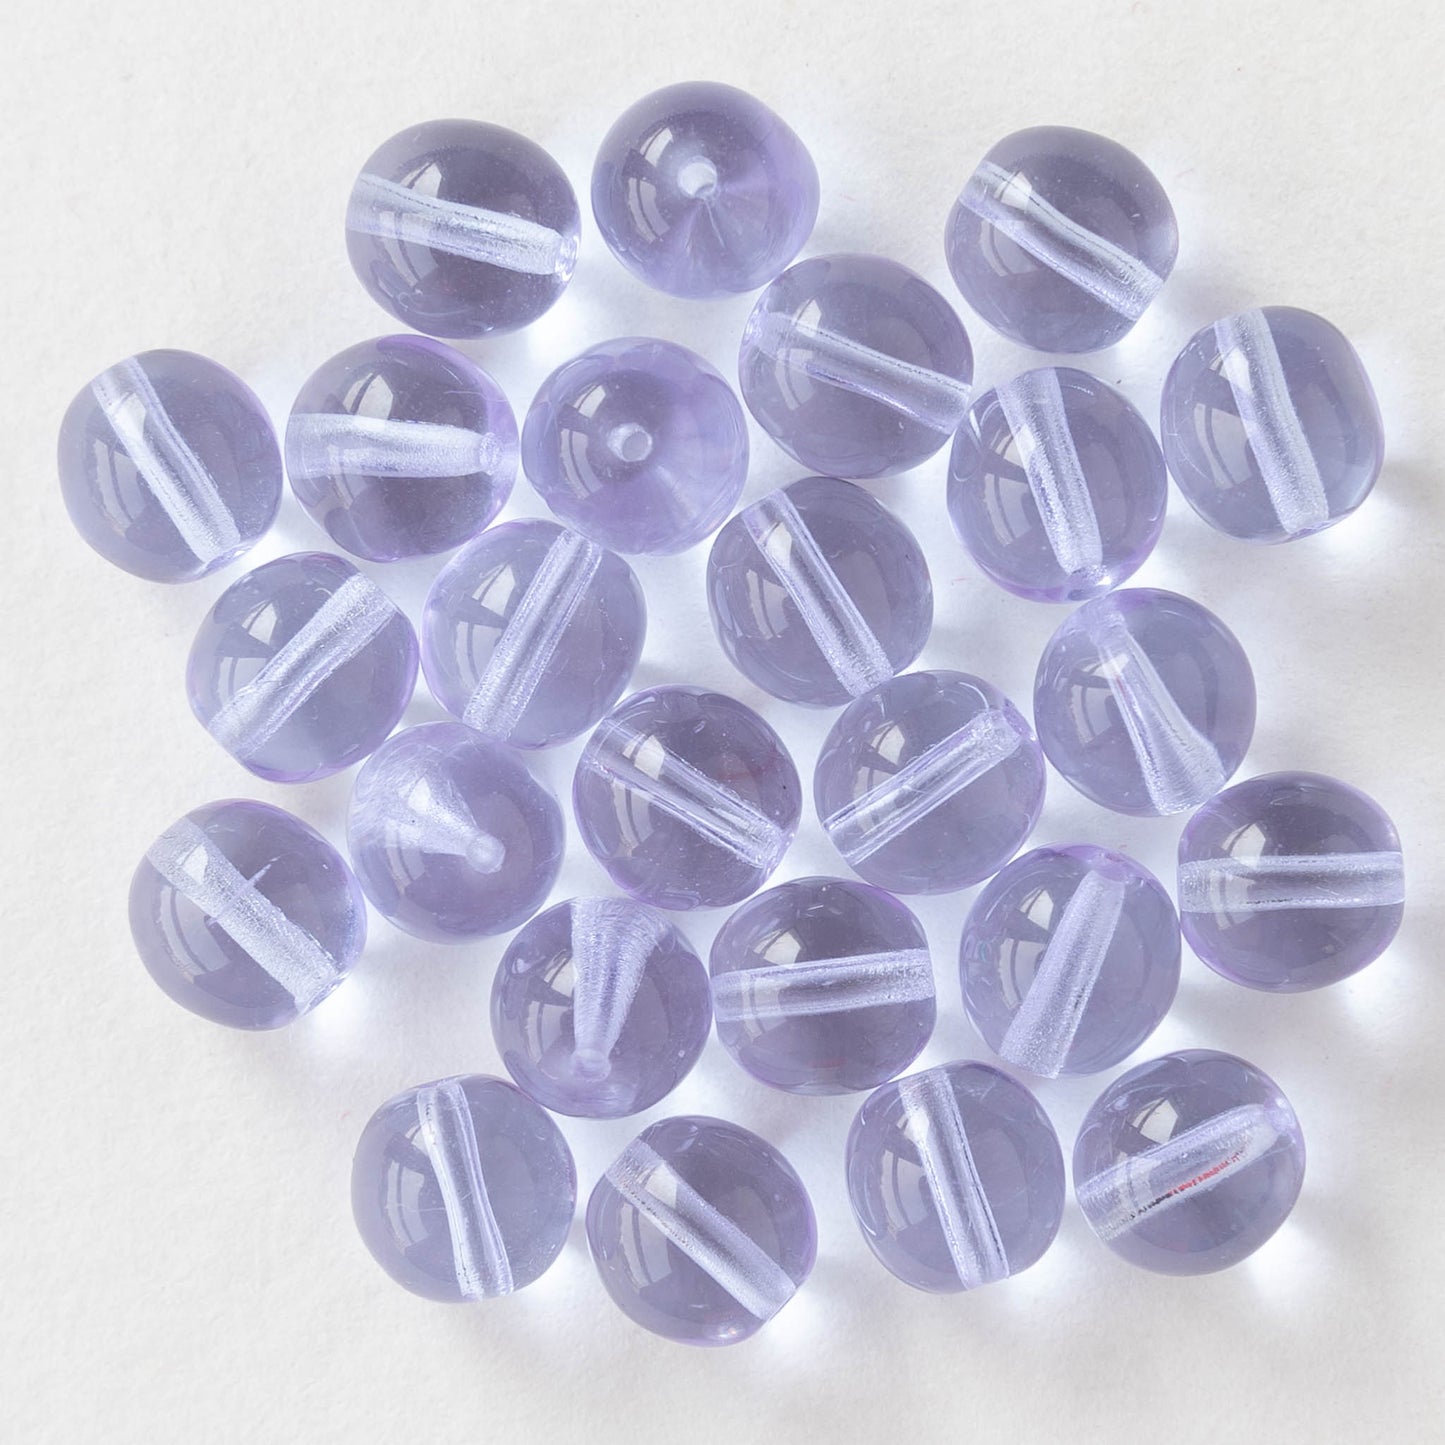 8mm Round Glass Beads - Alexandrite - 25 Beads